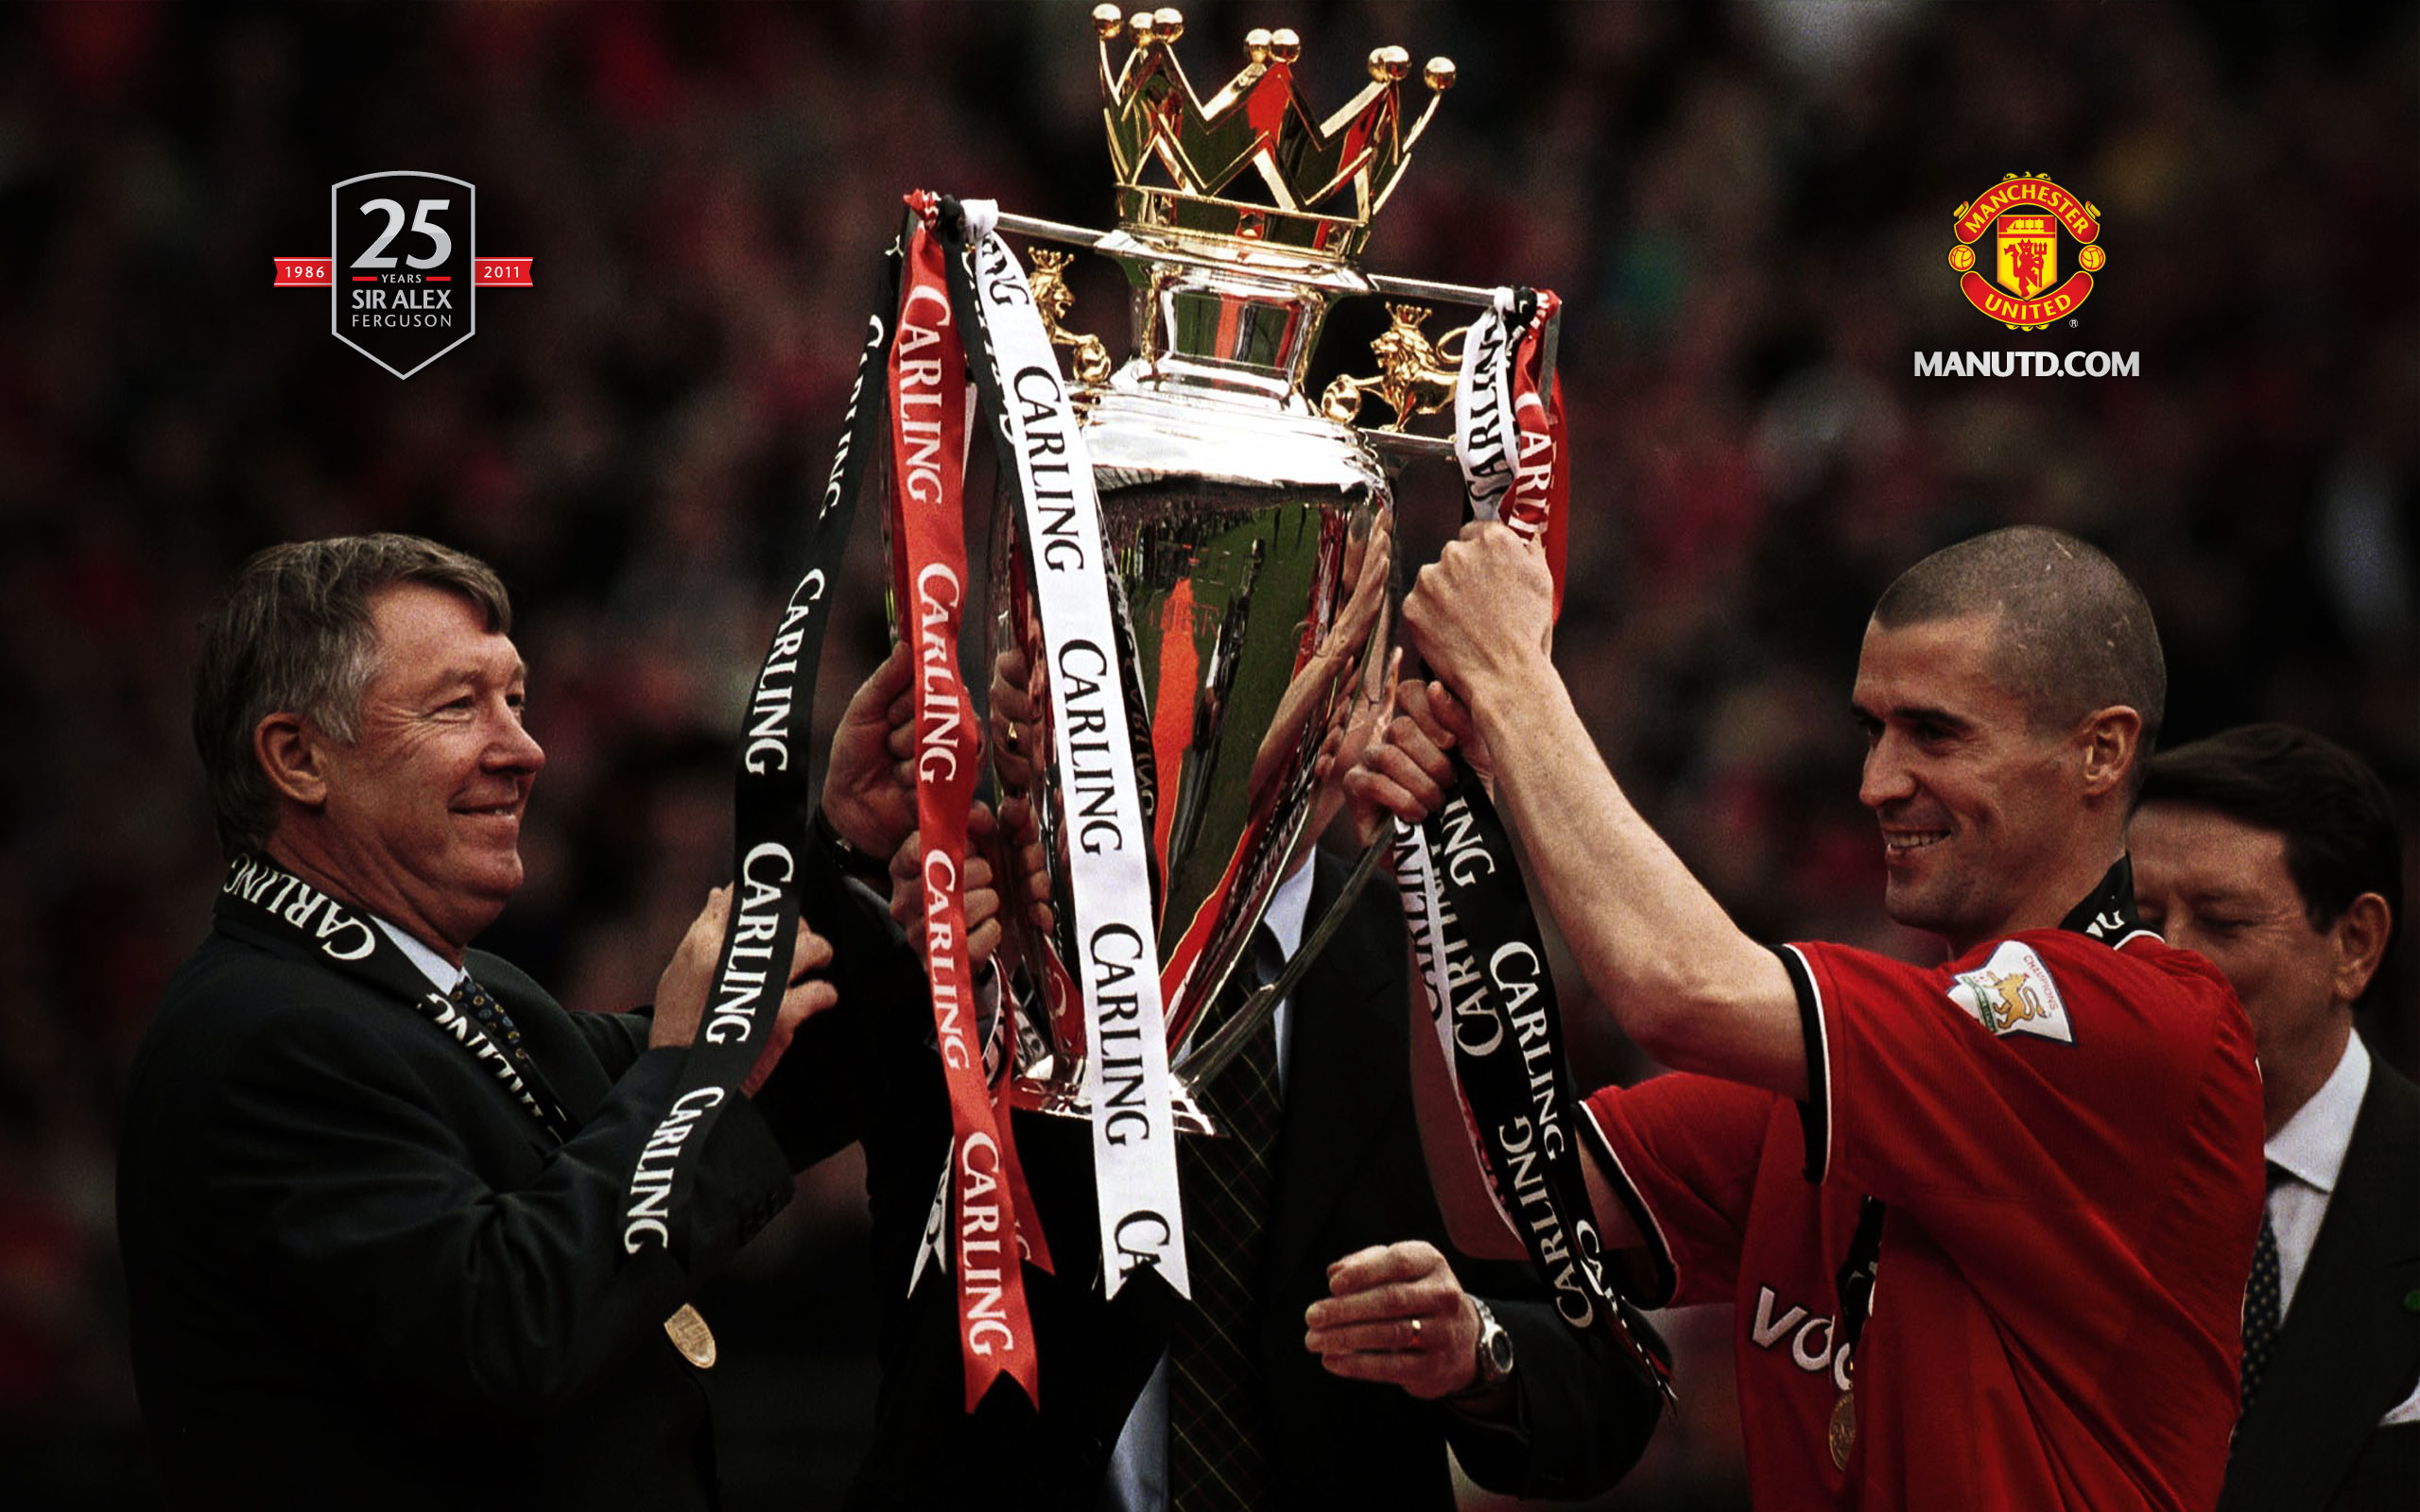 Sir Alex Ferguson - Manchester United , HD Wallpaper & Backgrounds